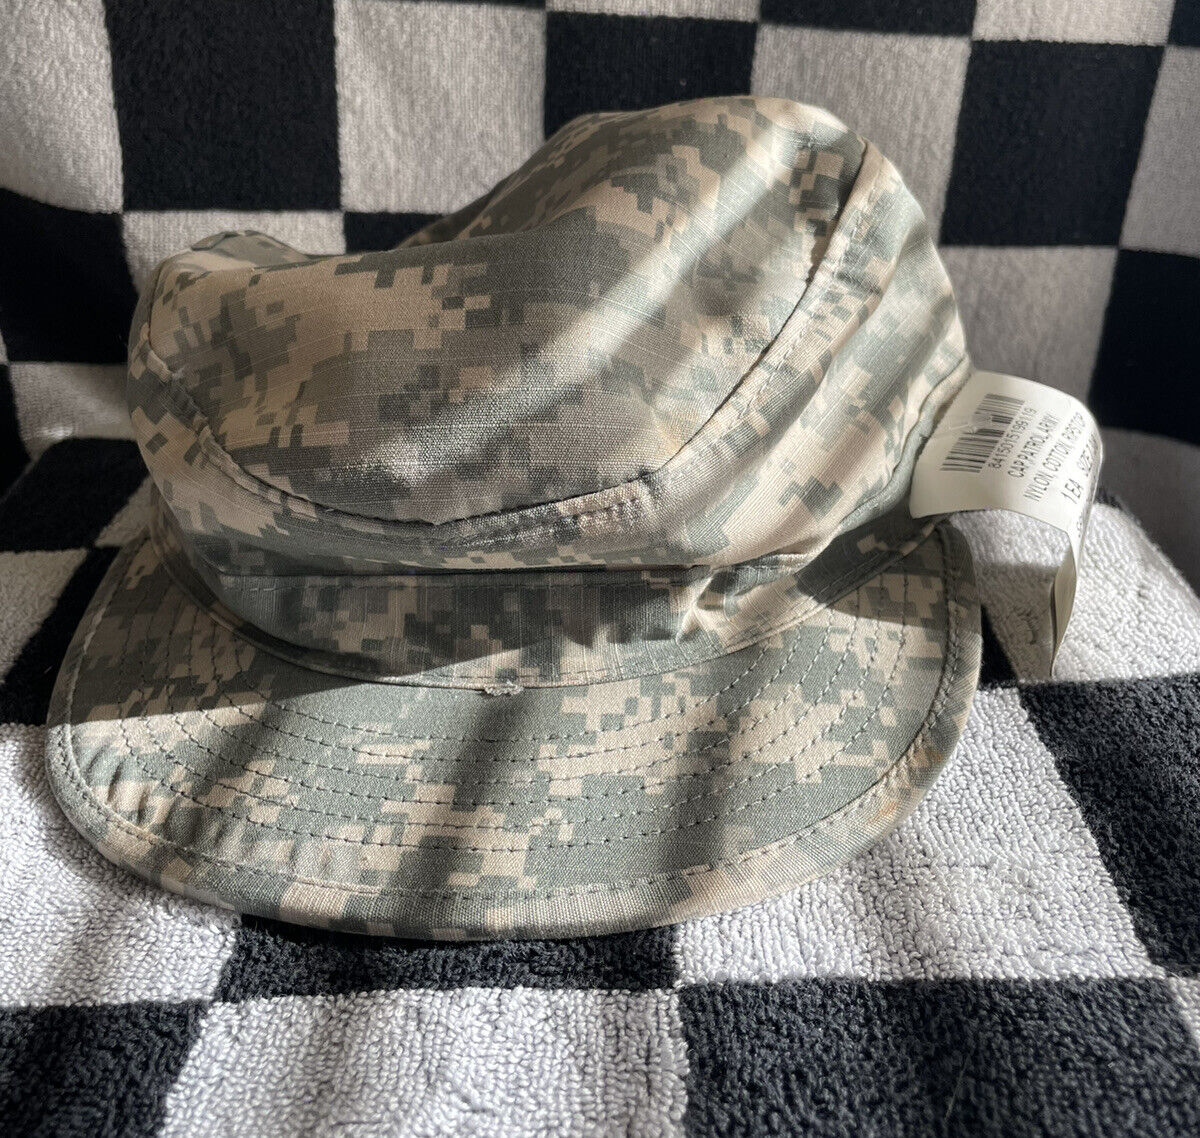 USGI Patrol Cap/Hat Size 7 3/8 ACU Digital Camo Army NWT 8415-01-519-9119